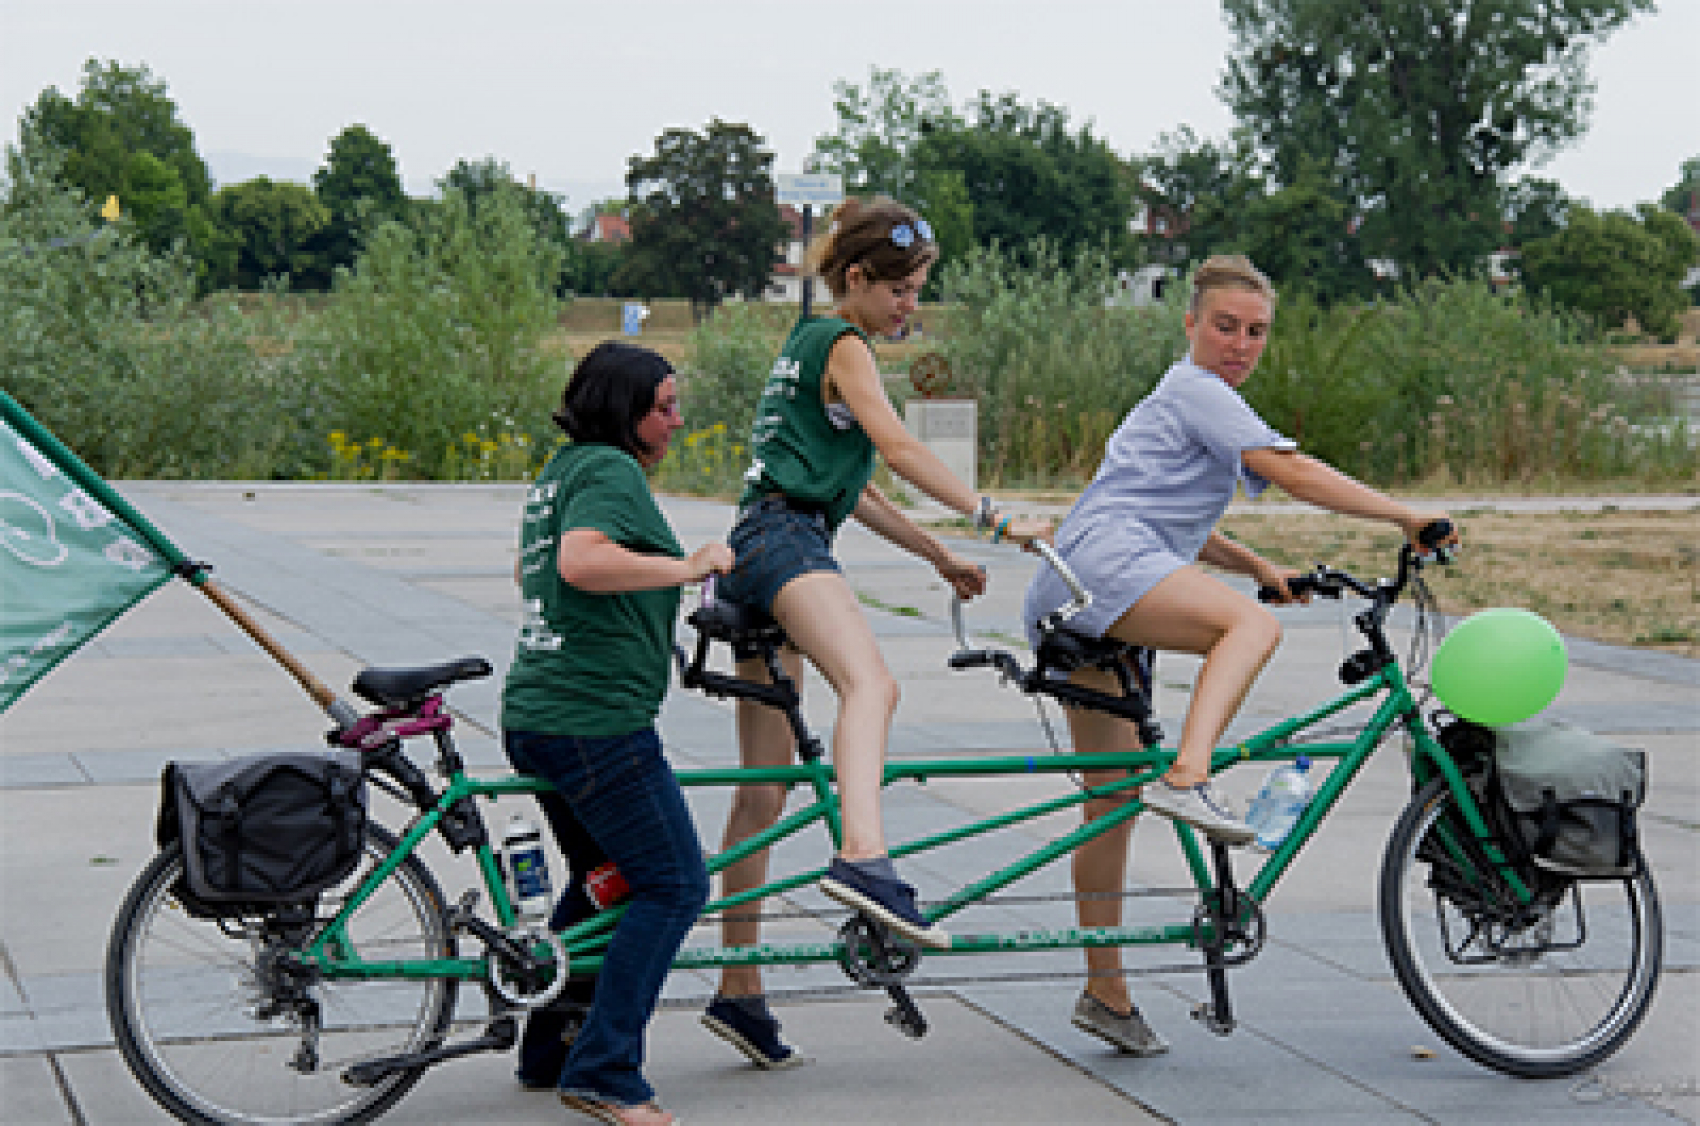 Vélorution, Alternatiba. Le Tour Alternatiba a parcouru 5000 km pendant l’été 2015 avec un vélo 4 places, pour mobiliser des dizaines de milliers de personnes autour des « vraies alternatives » au changement climatique dans la perspective de la COP21. © Christine Viale/Flickr